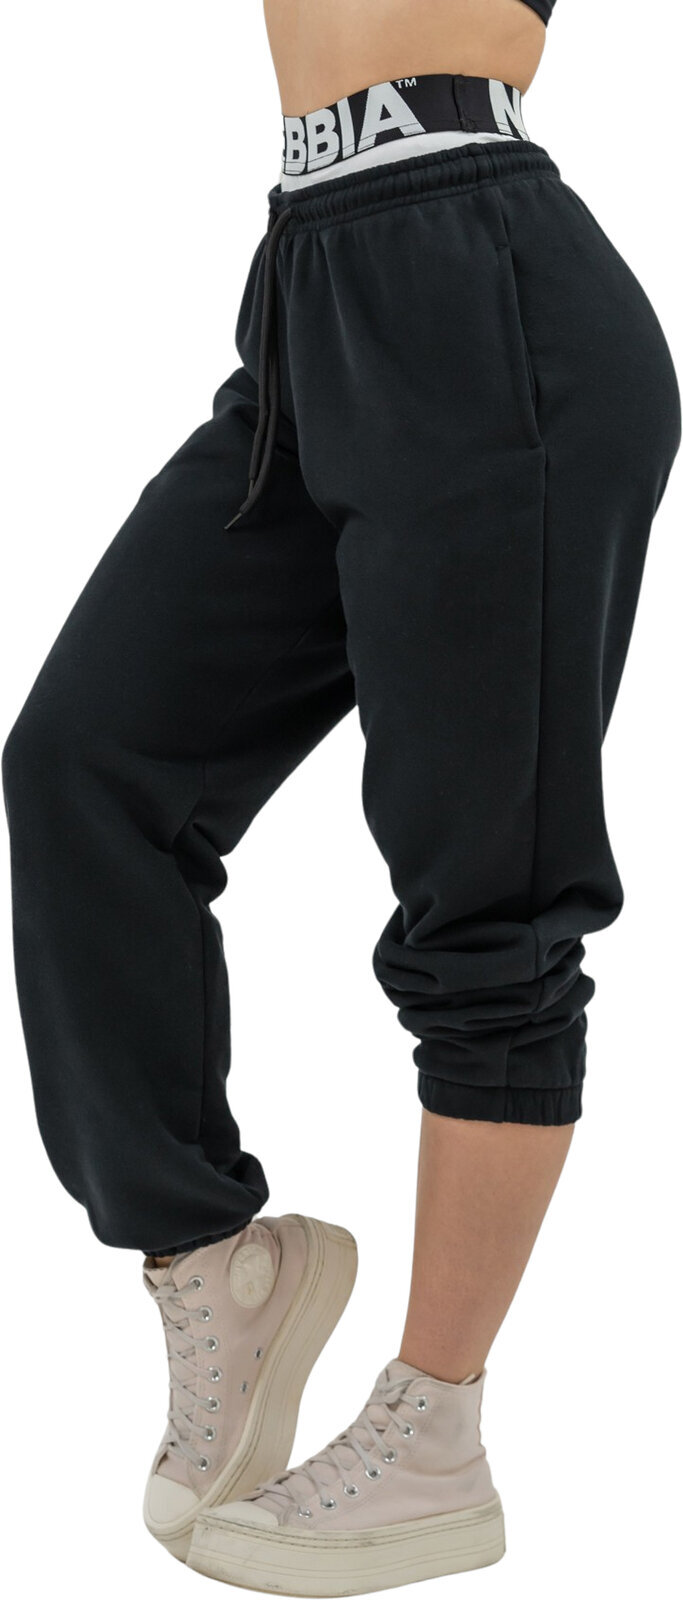 Fitness spodnie Nebbia Fitness Sweatpants Muscle Mommy Black M Fitness spodnie